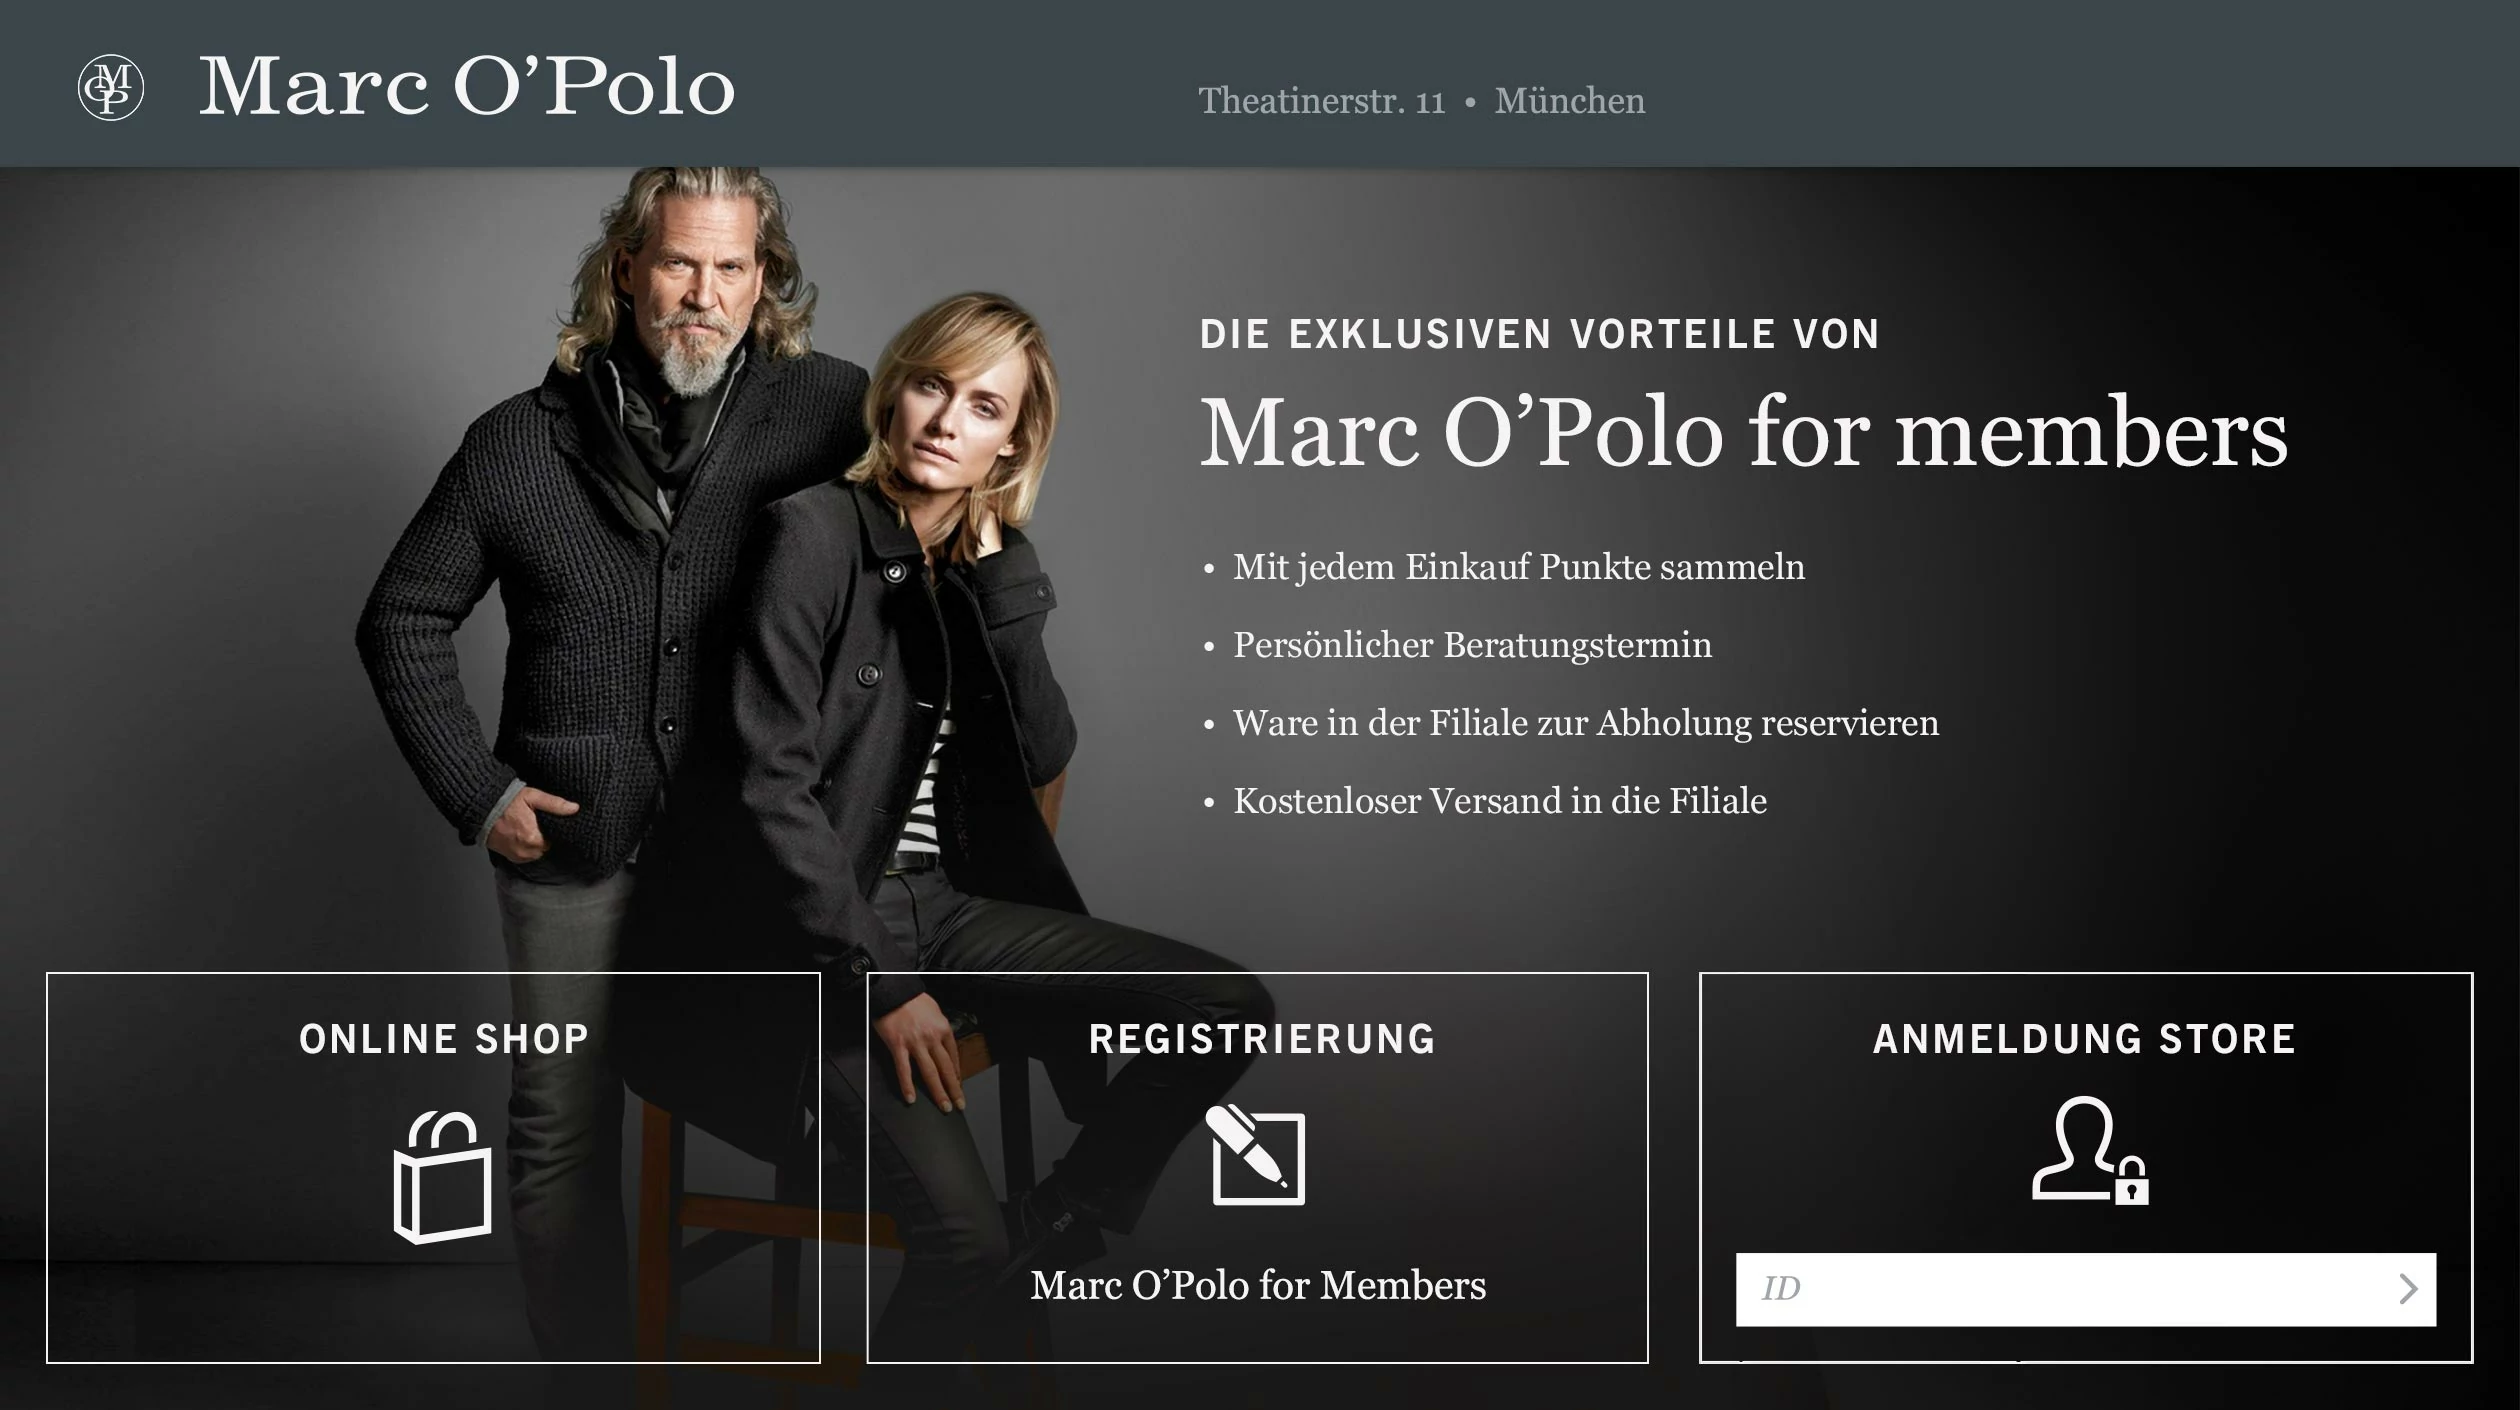 Startseite der Verkäufer App mit Login und Registrierung. Auf dem Hintergrundbild sind Jeff Bridges und Uma Thurman zu sehen.